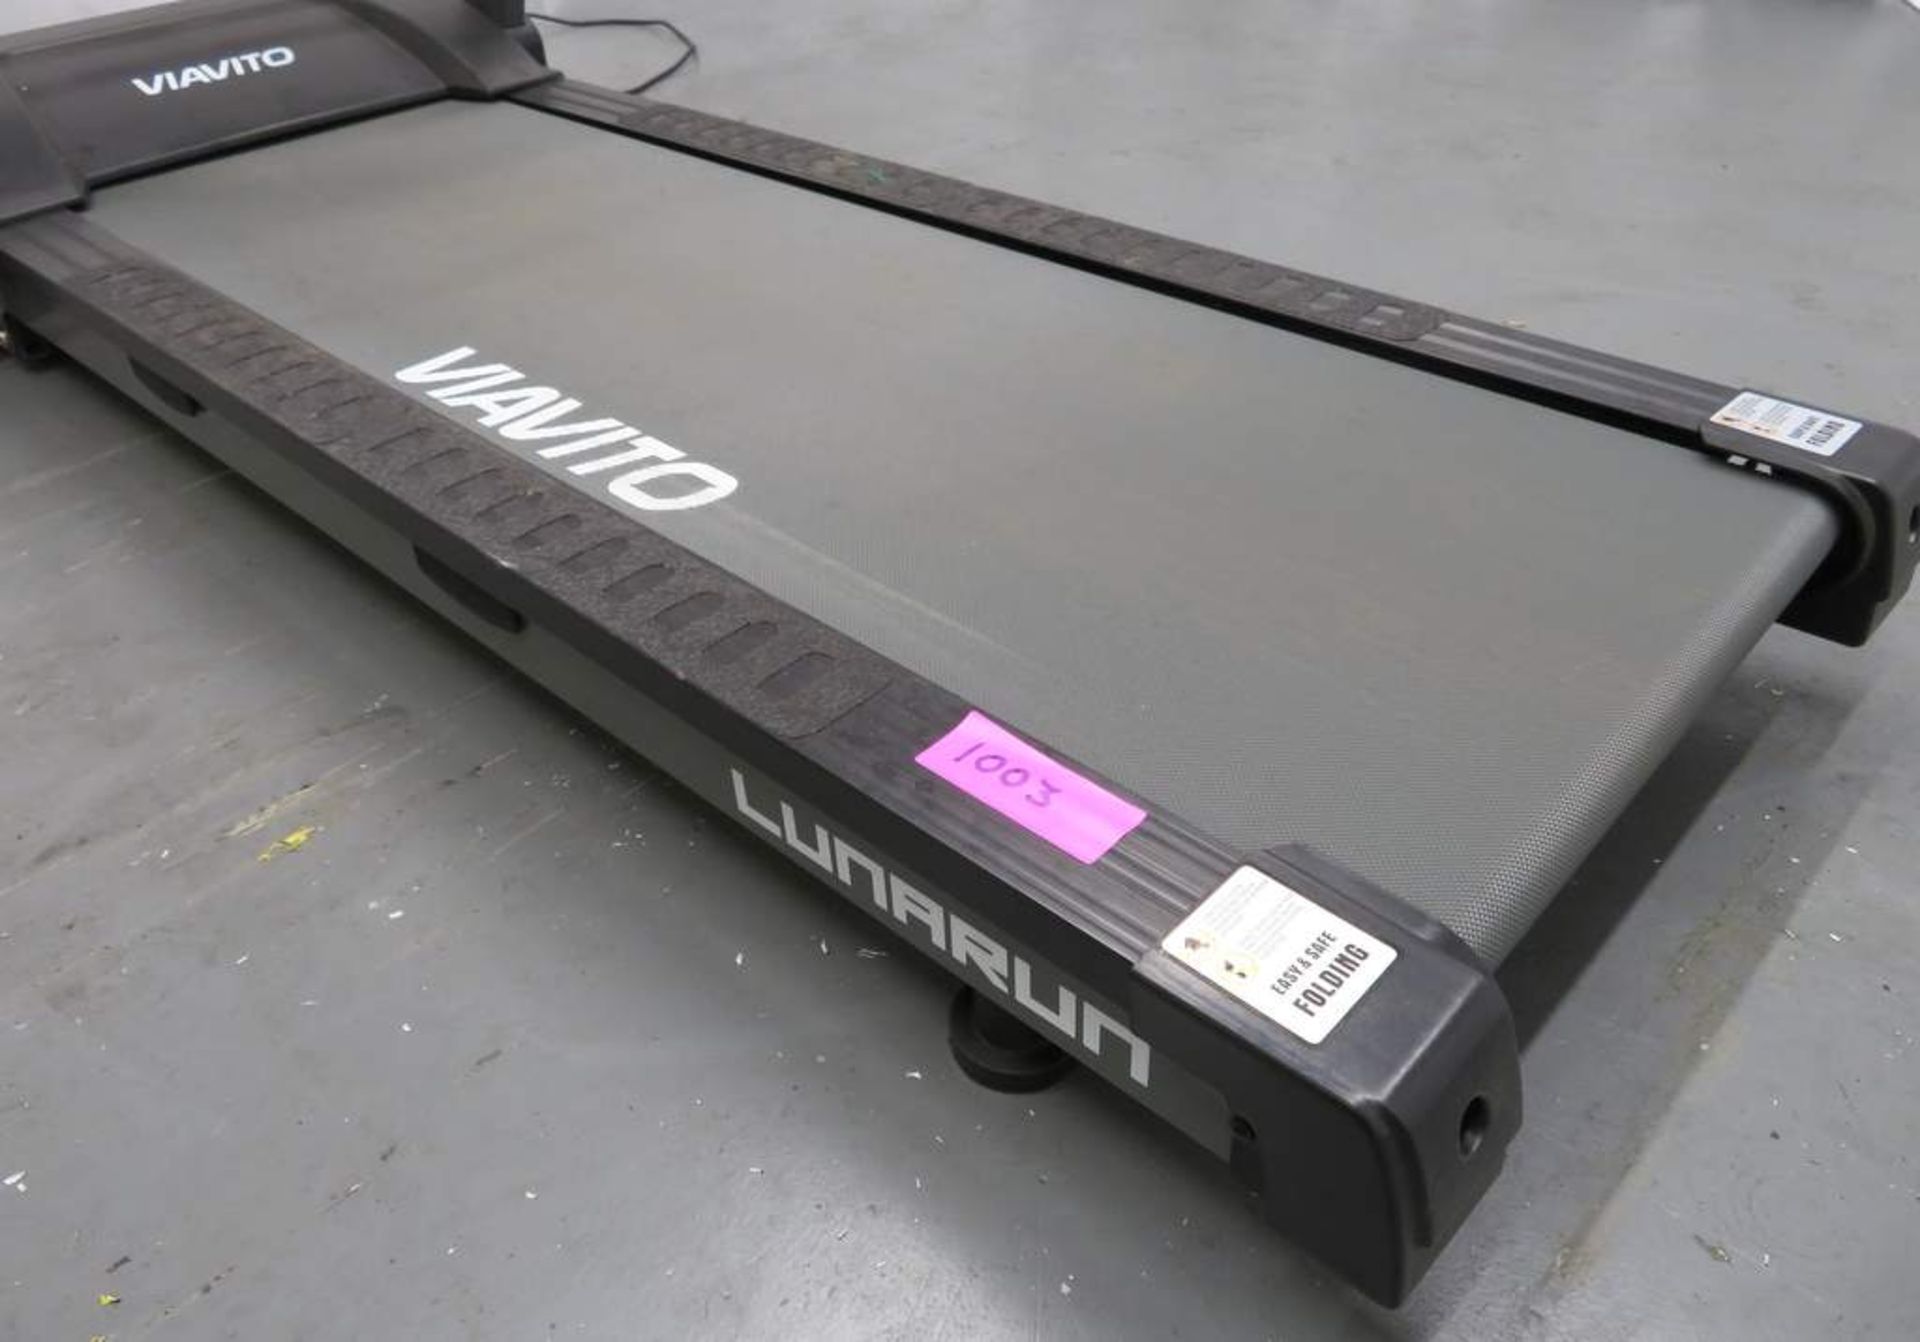 Viavito Luna Run Treadmill - Foldable. - Image 2 of 6